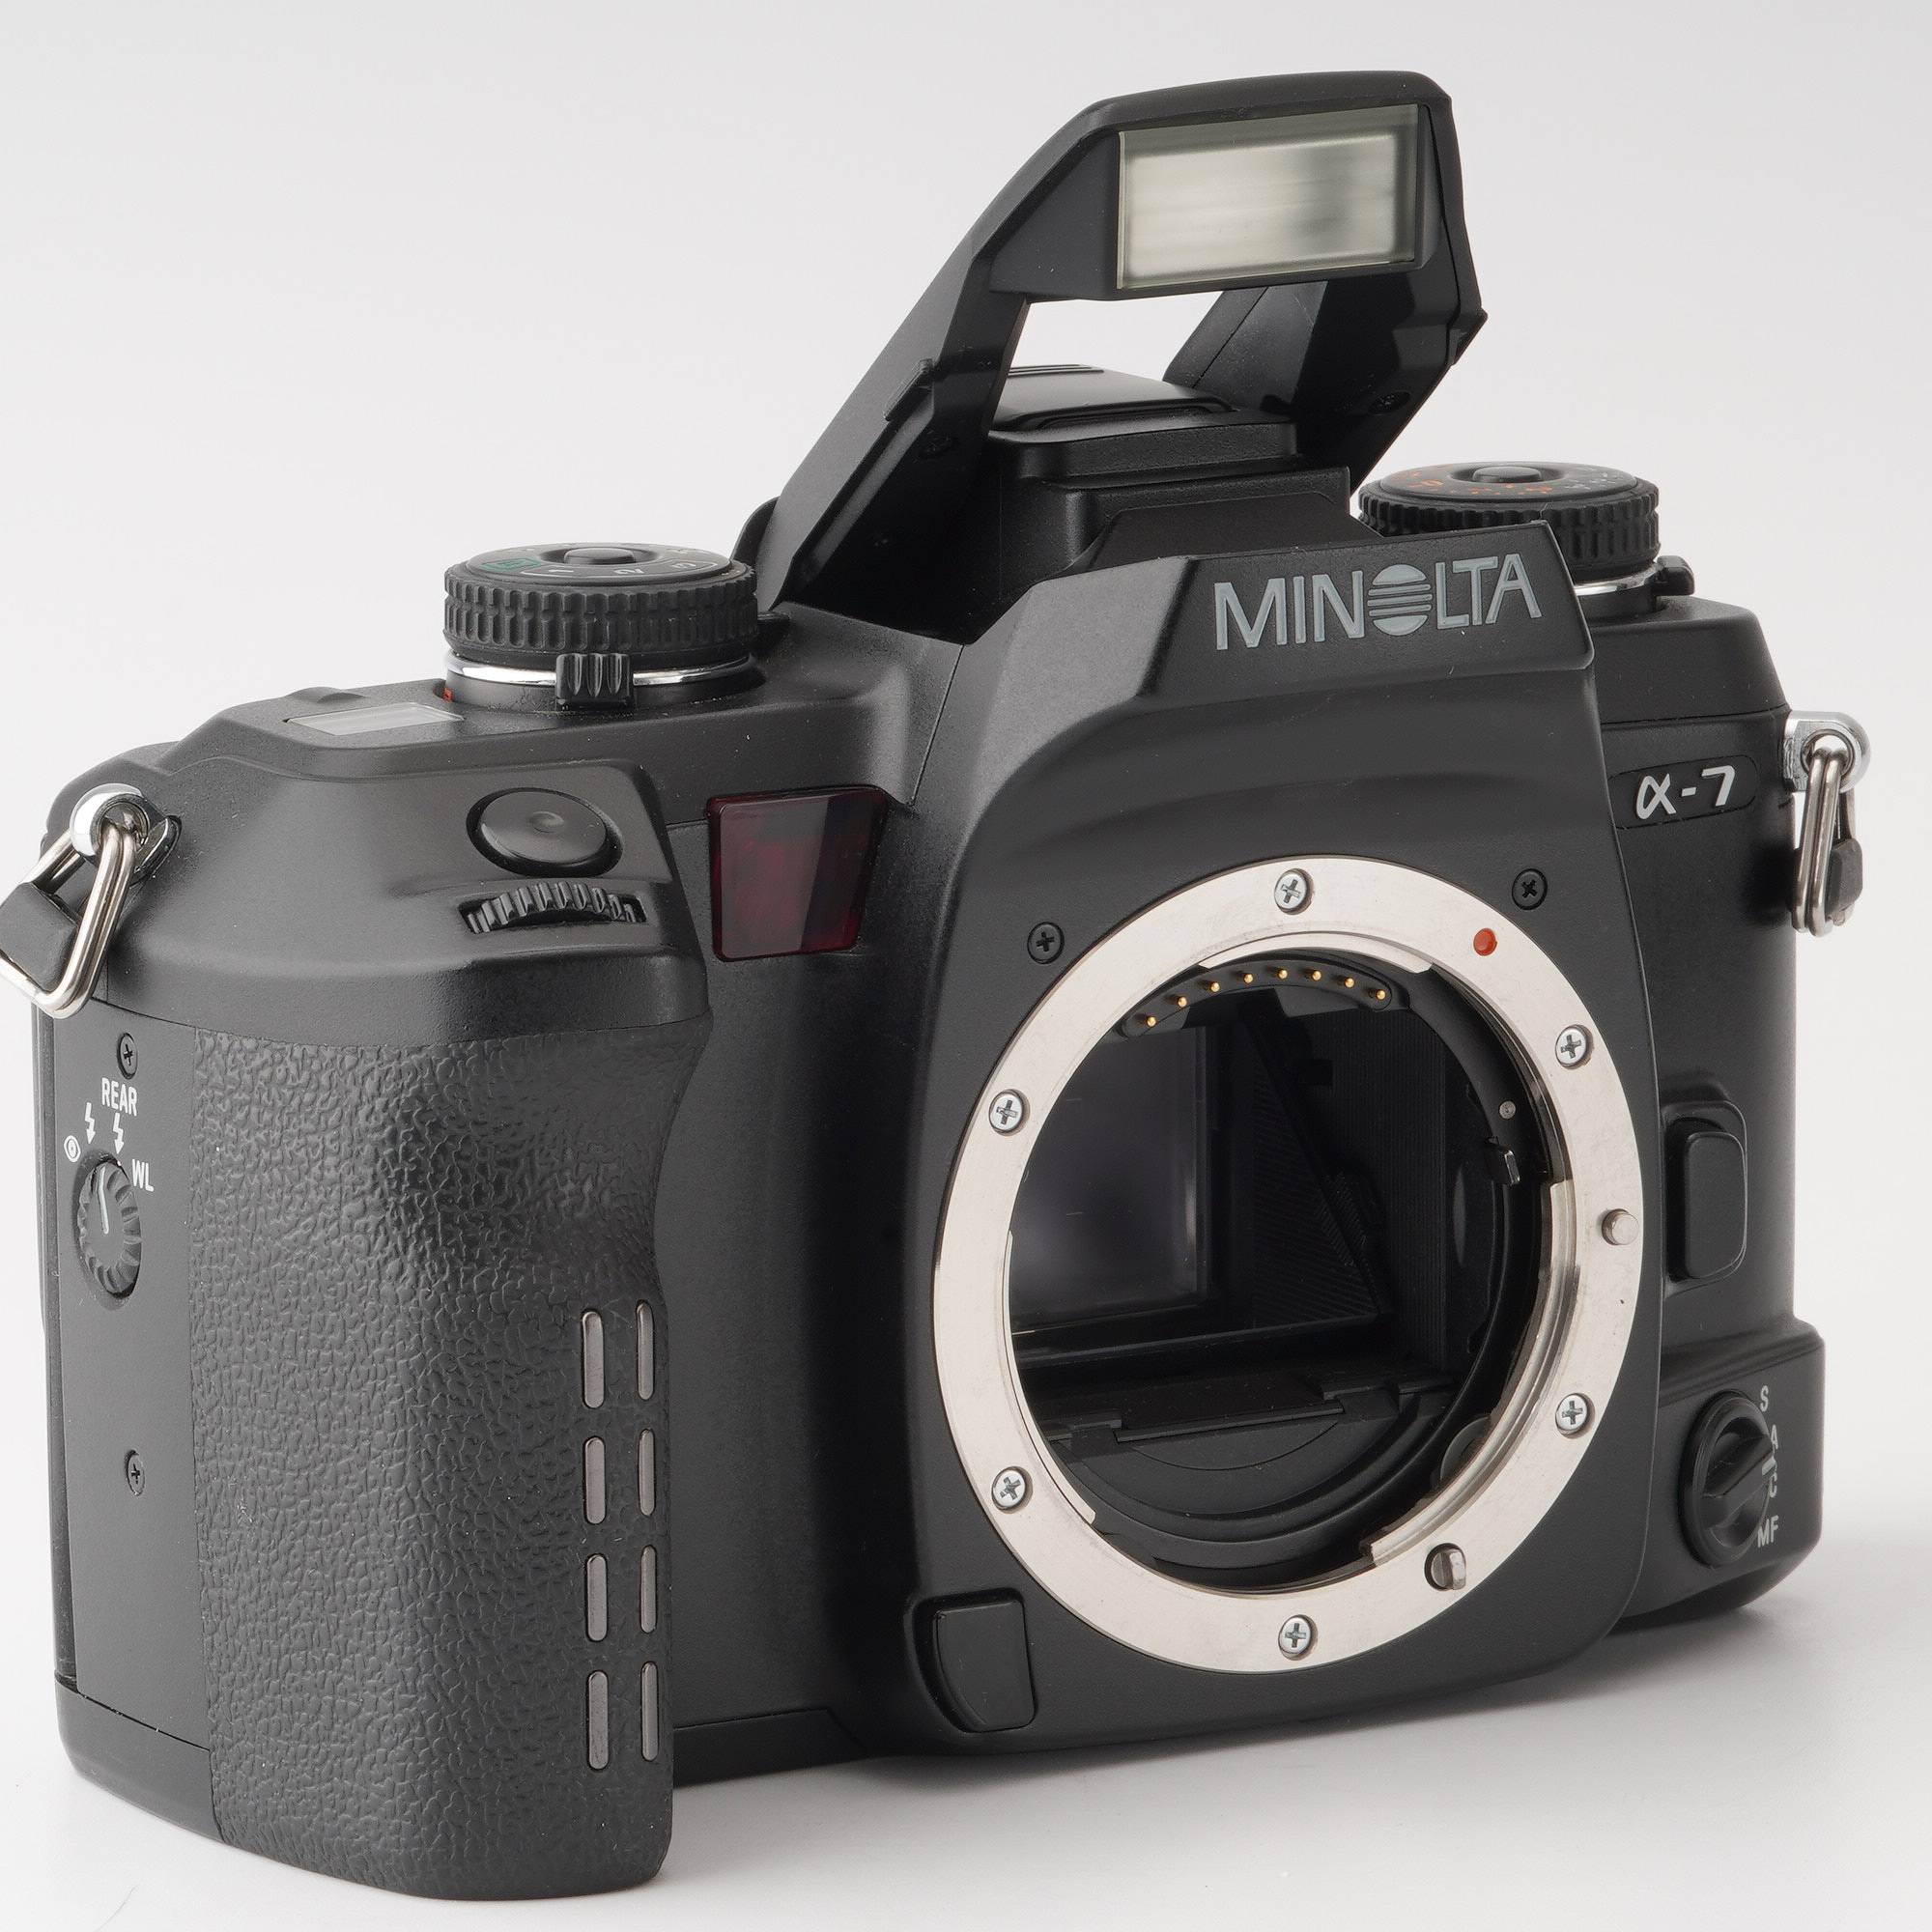 ミノルタ Minolta α-7 alpha-7 / Minolta AF Zoom 24-105mm F3.5-4.5 D